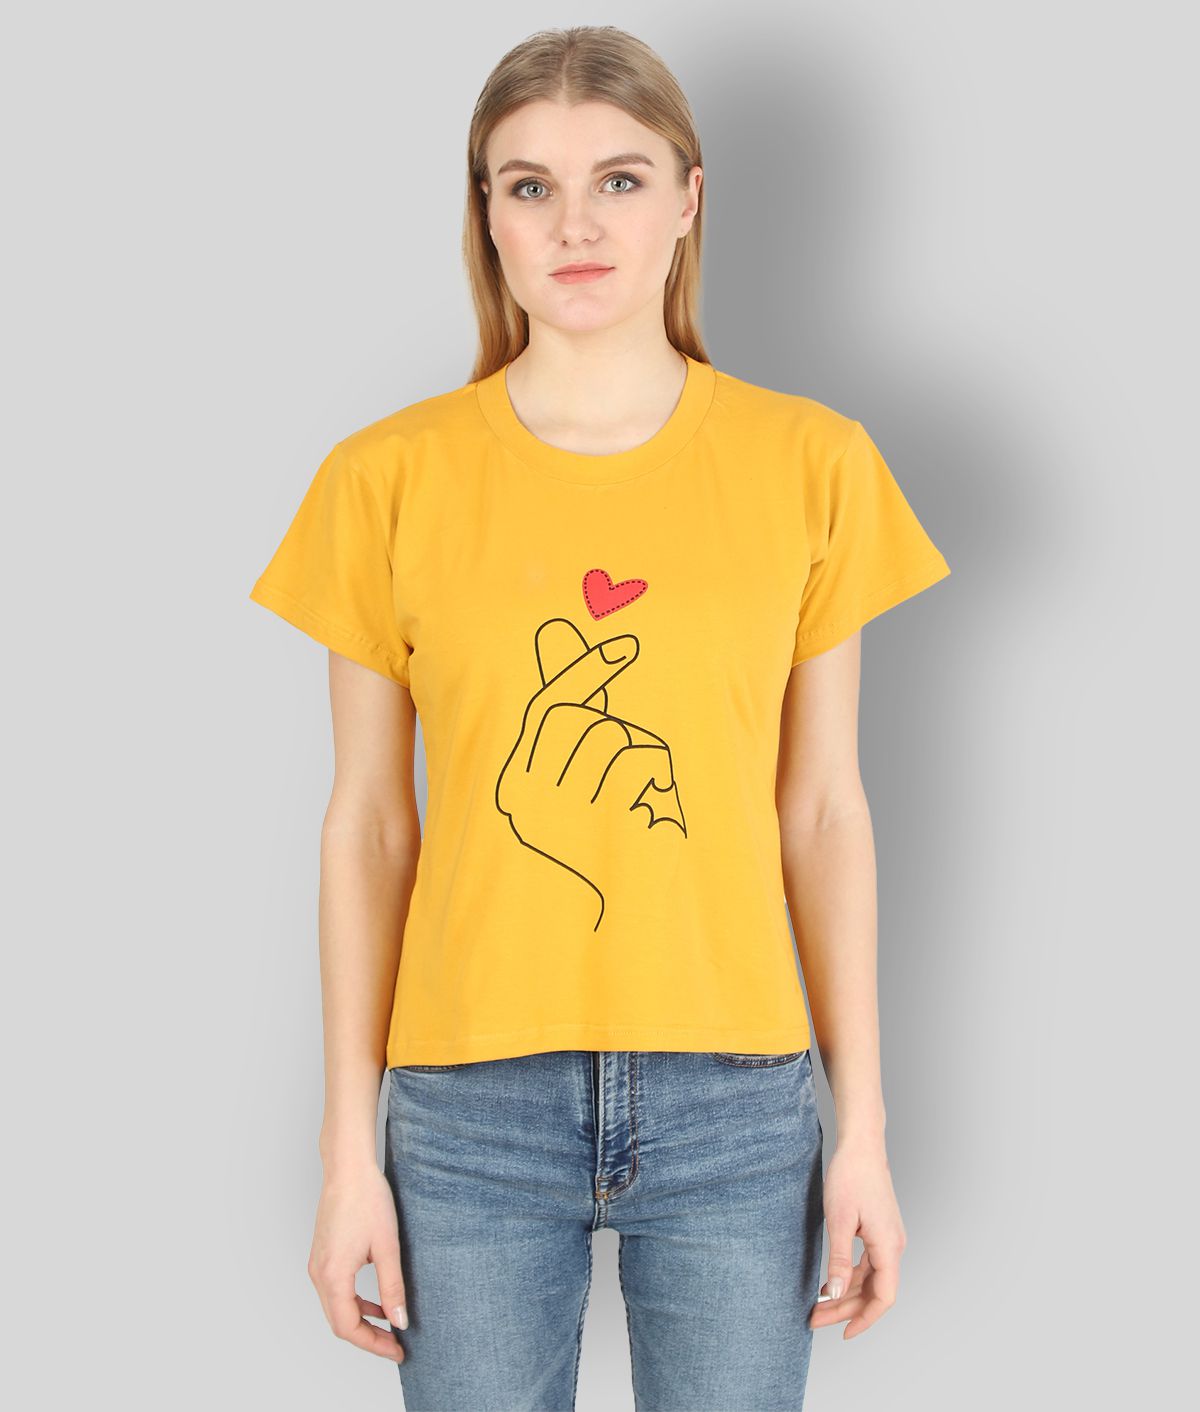     			Affair - Yellow Cotton Blend Regular Fit Women's T-Shirt ( Pack of 1 )